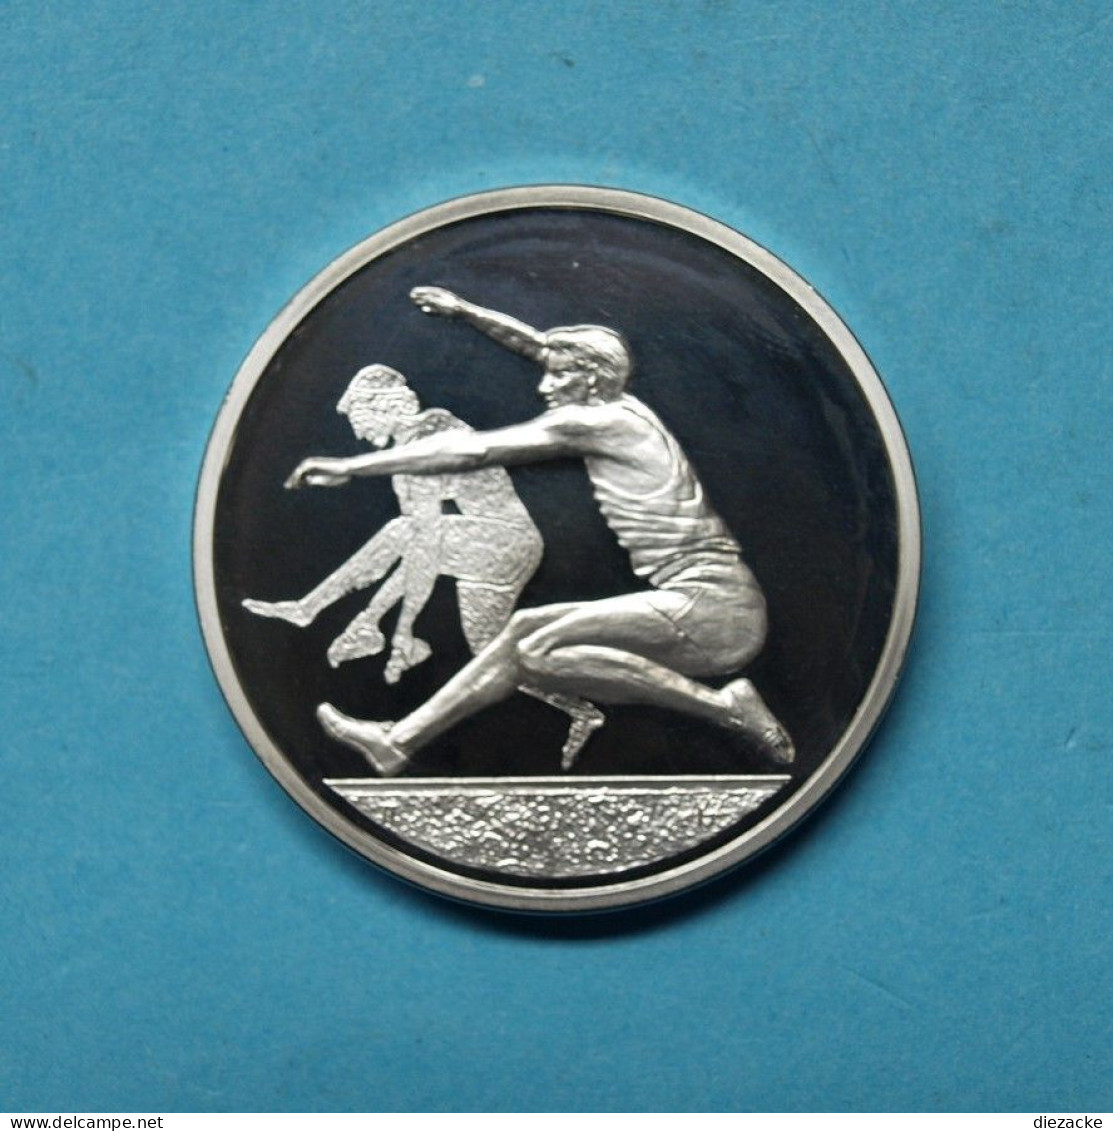 Griechenland 2004 10 Euro Olympiade Athen Weitsprung Silber PP (M4202 - Greece